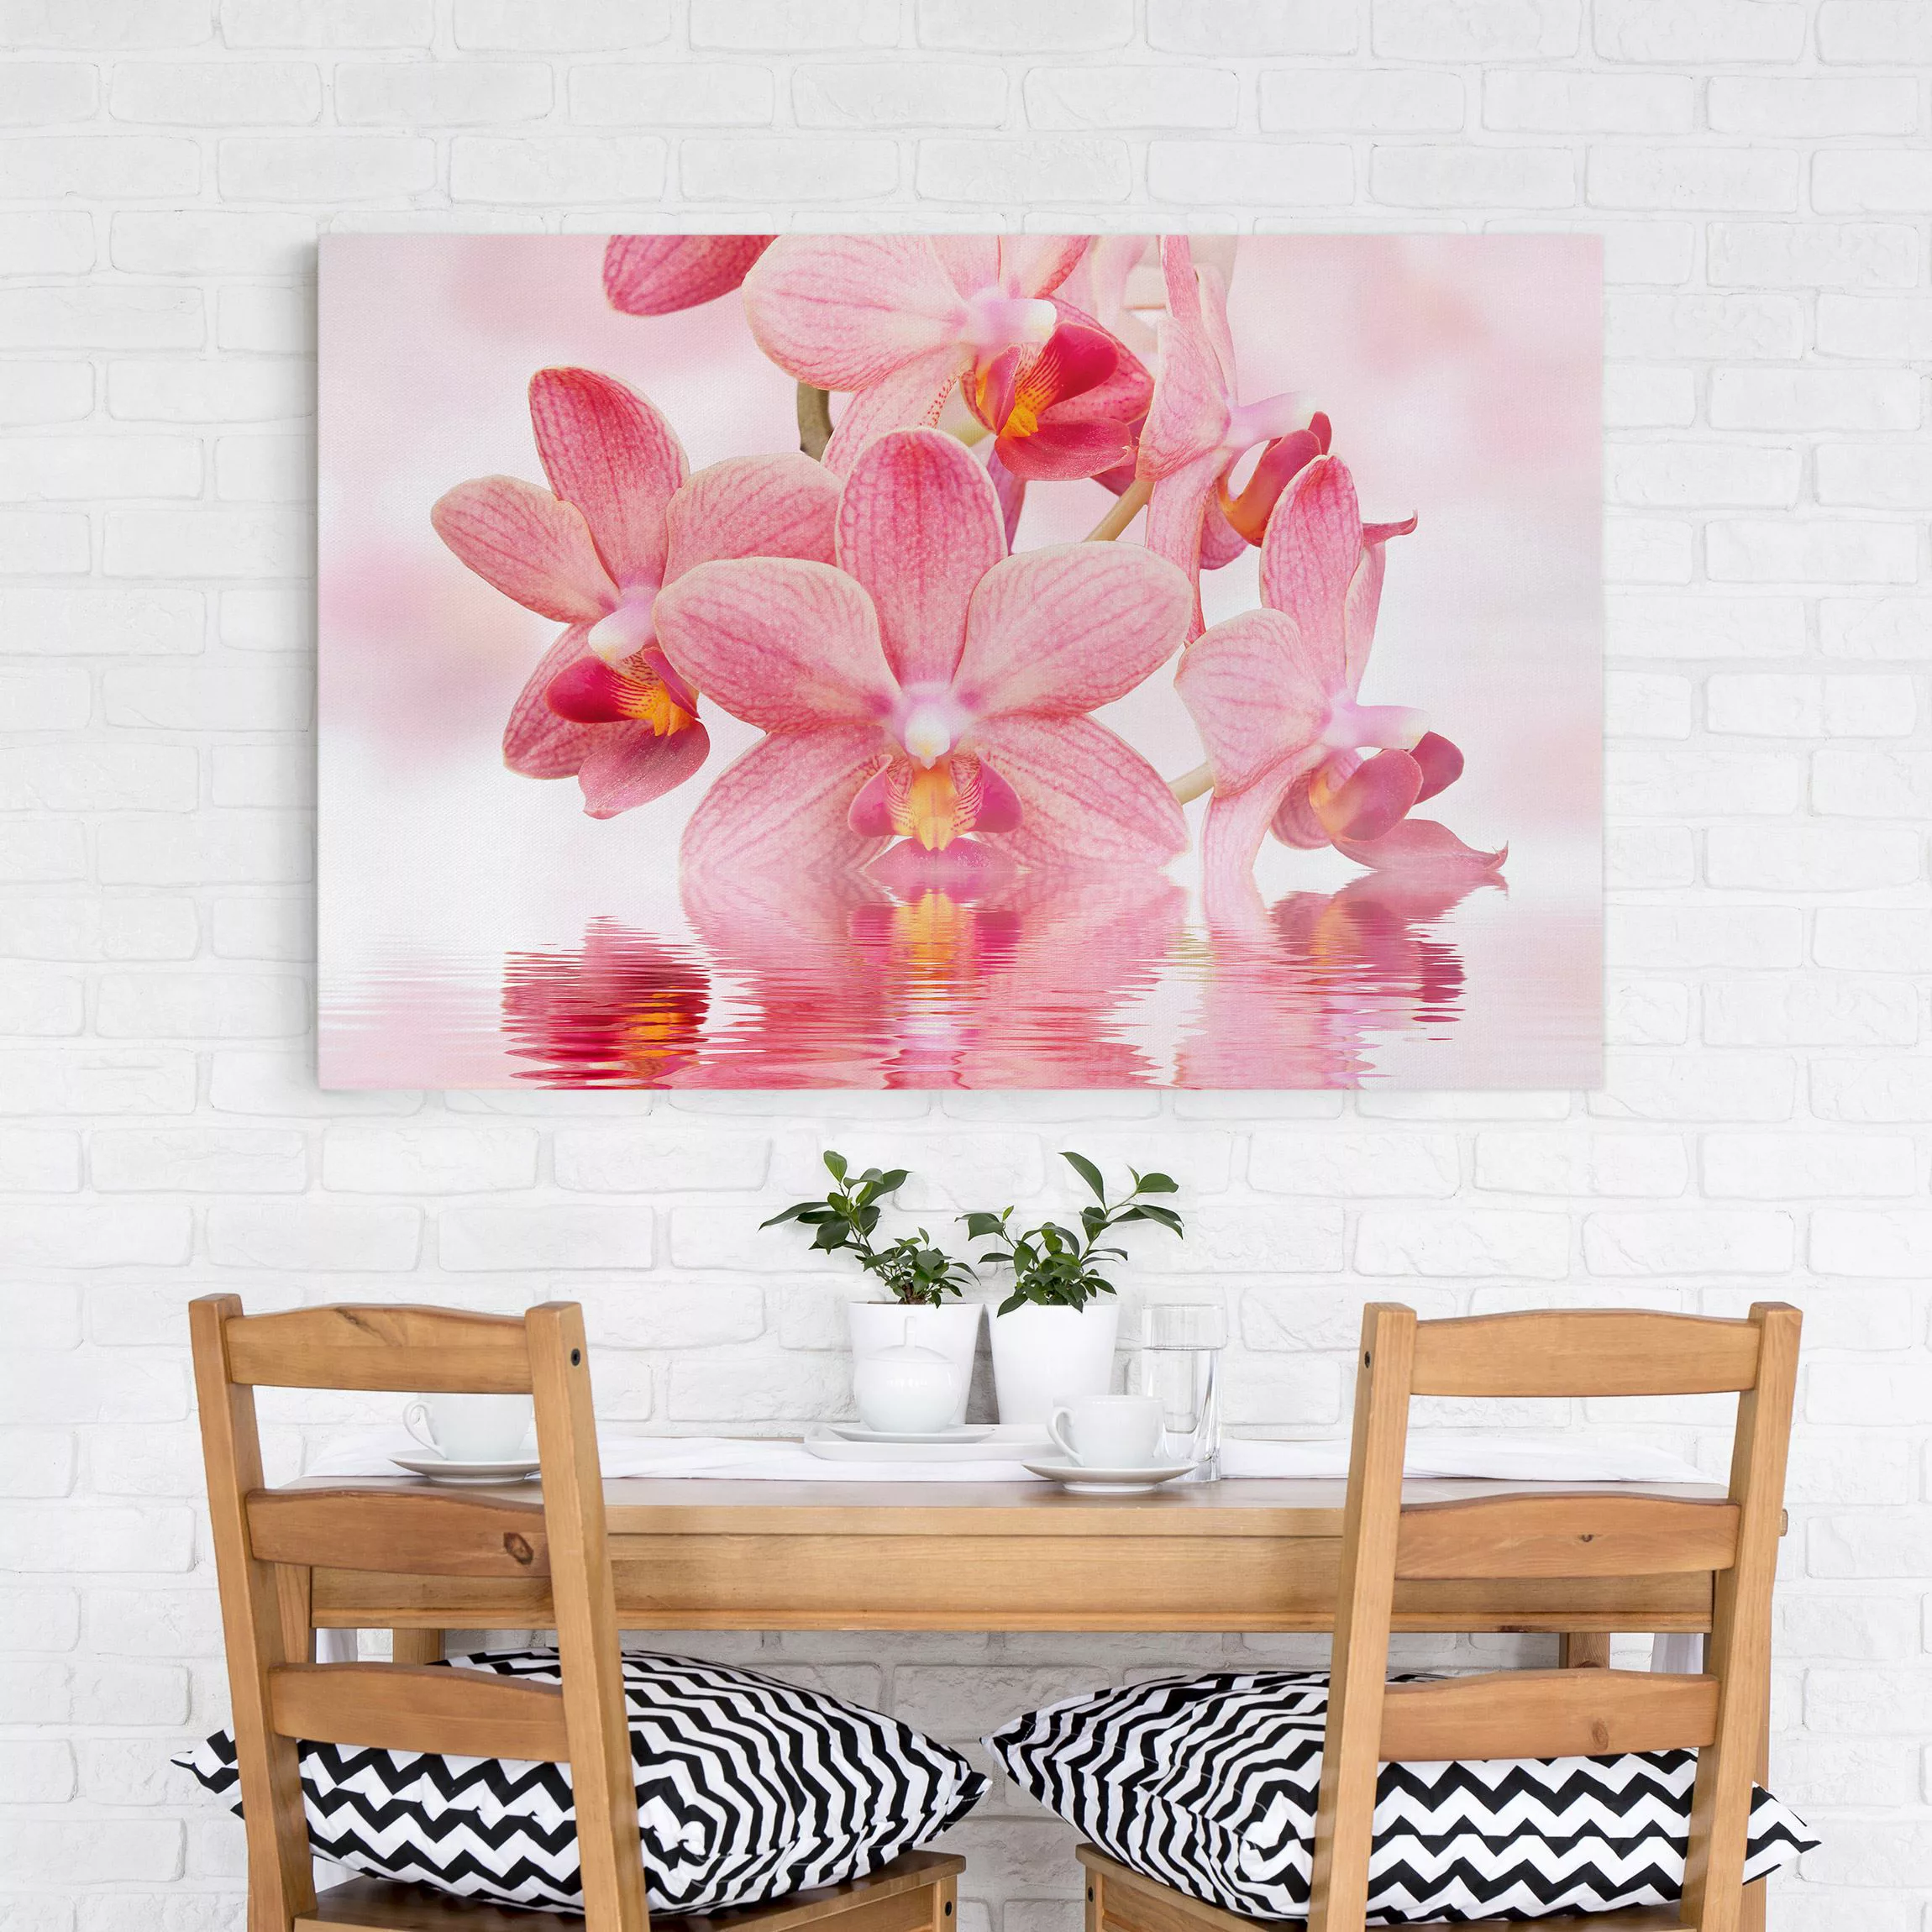 Leinwandbild Blumen - Querformat Rosa Orchideen auf Wasser günstig online kaufen